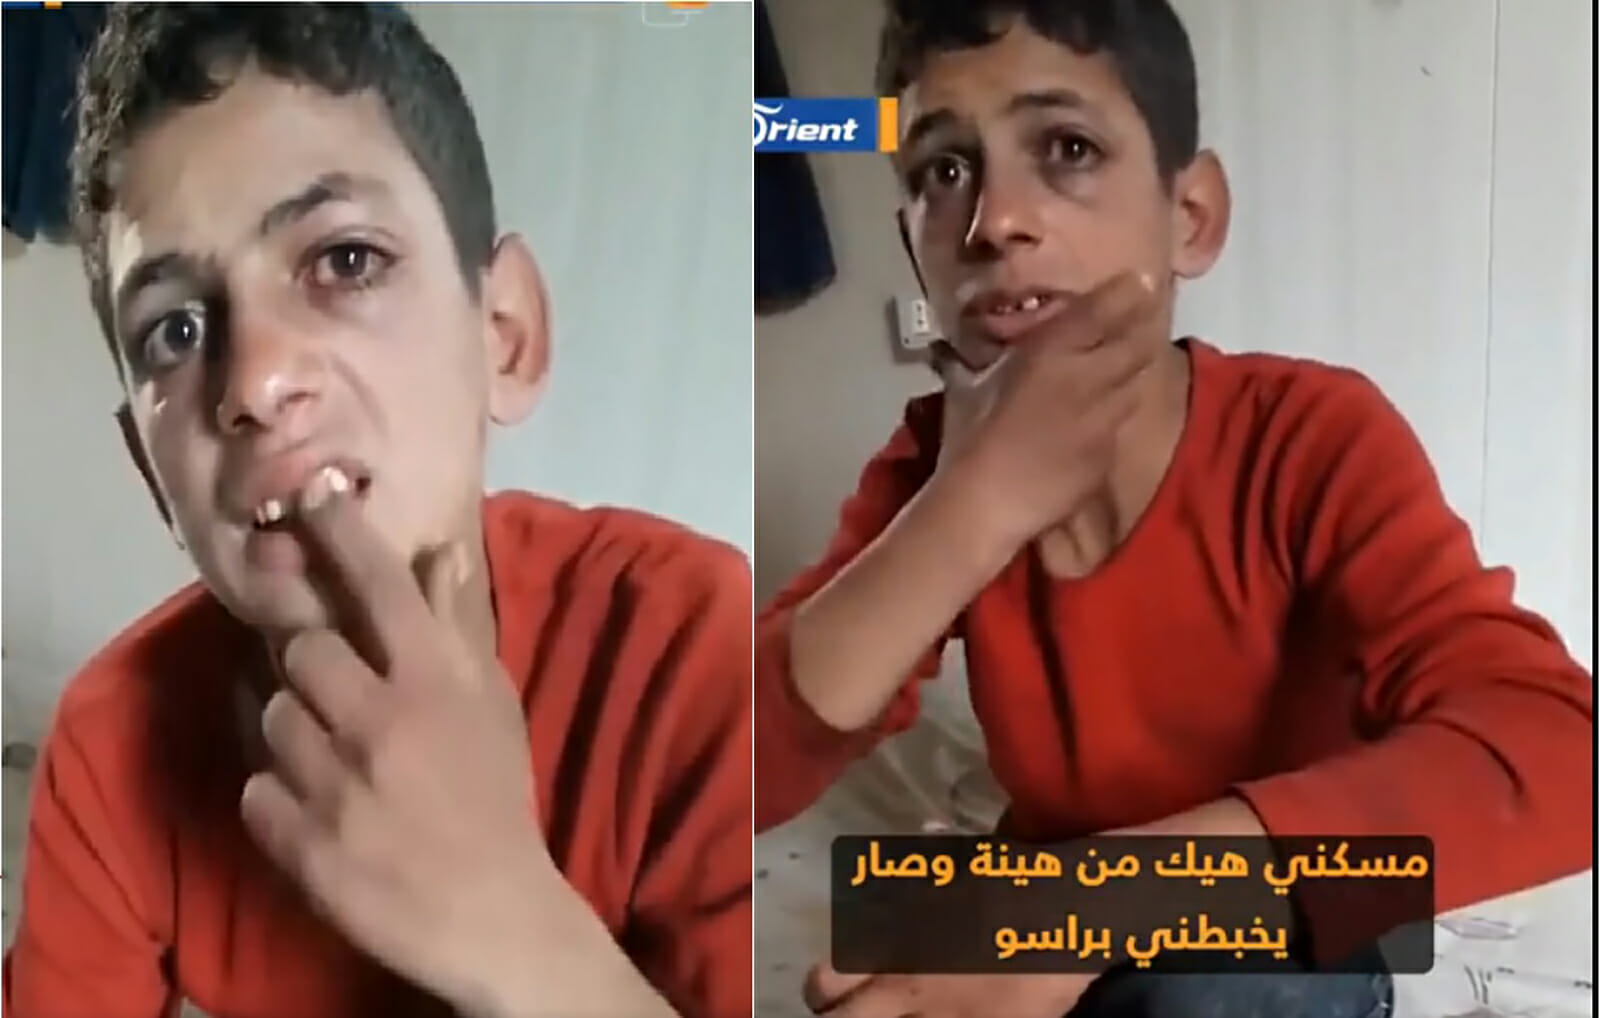 تعذيب طفل سوري في لبنان watanserb.com